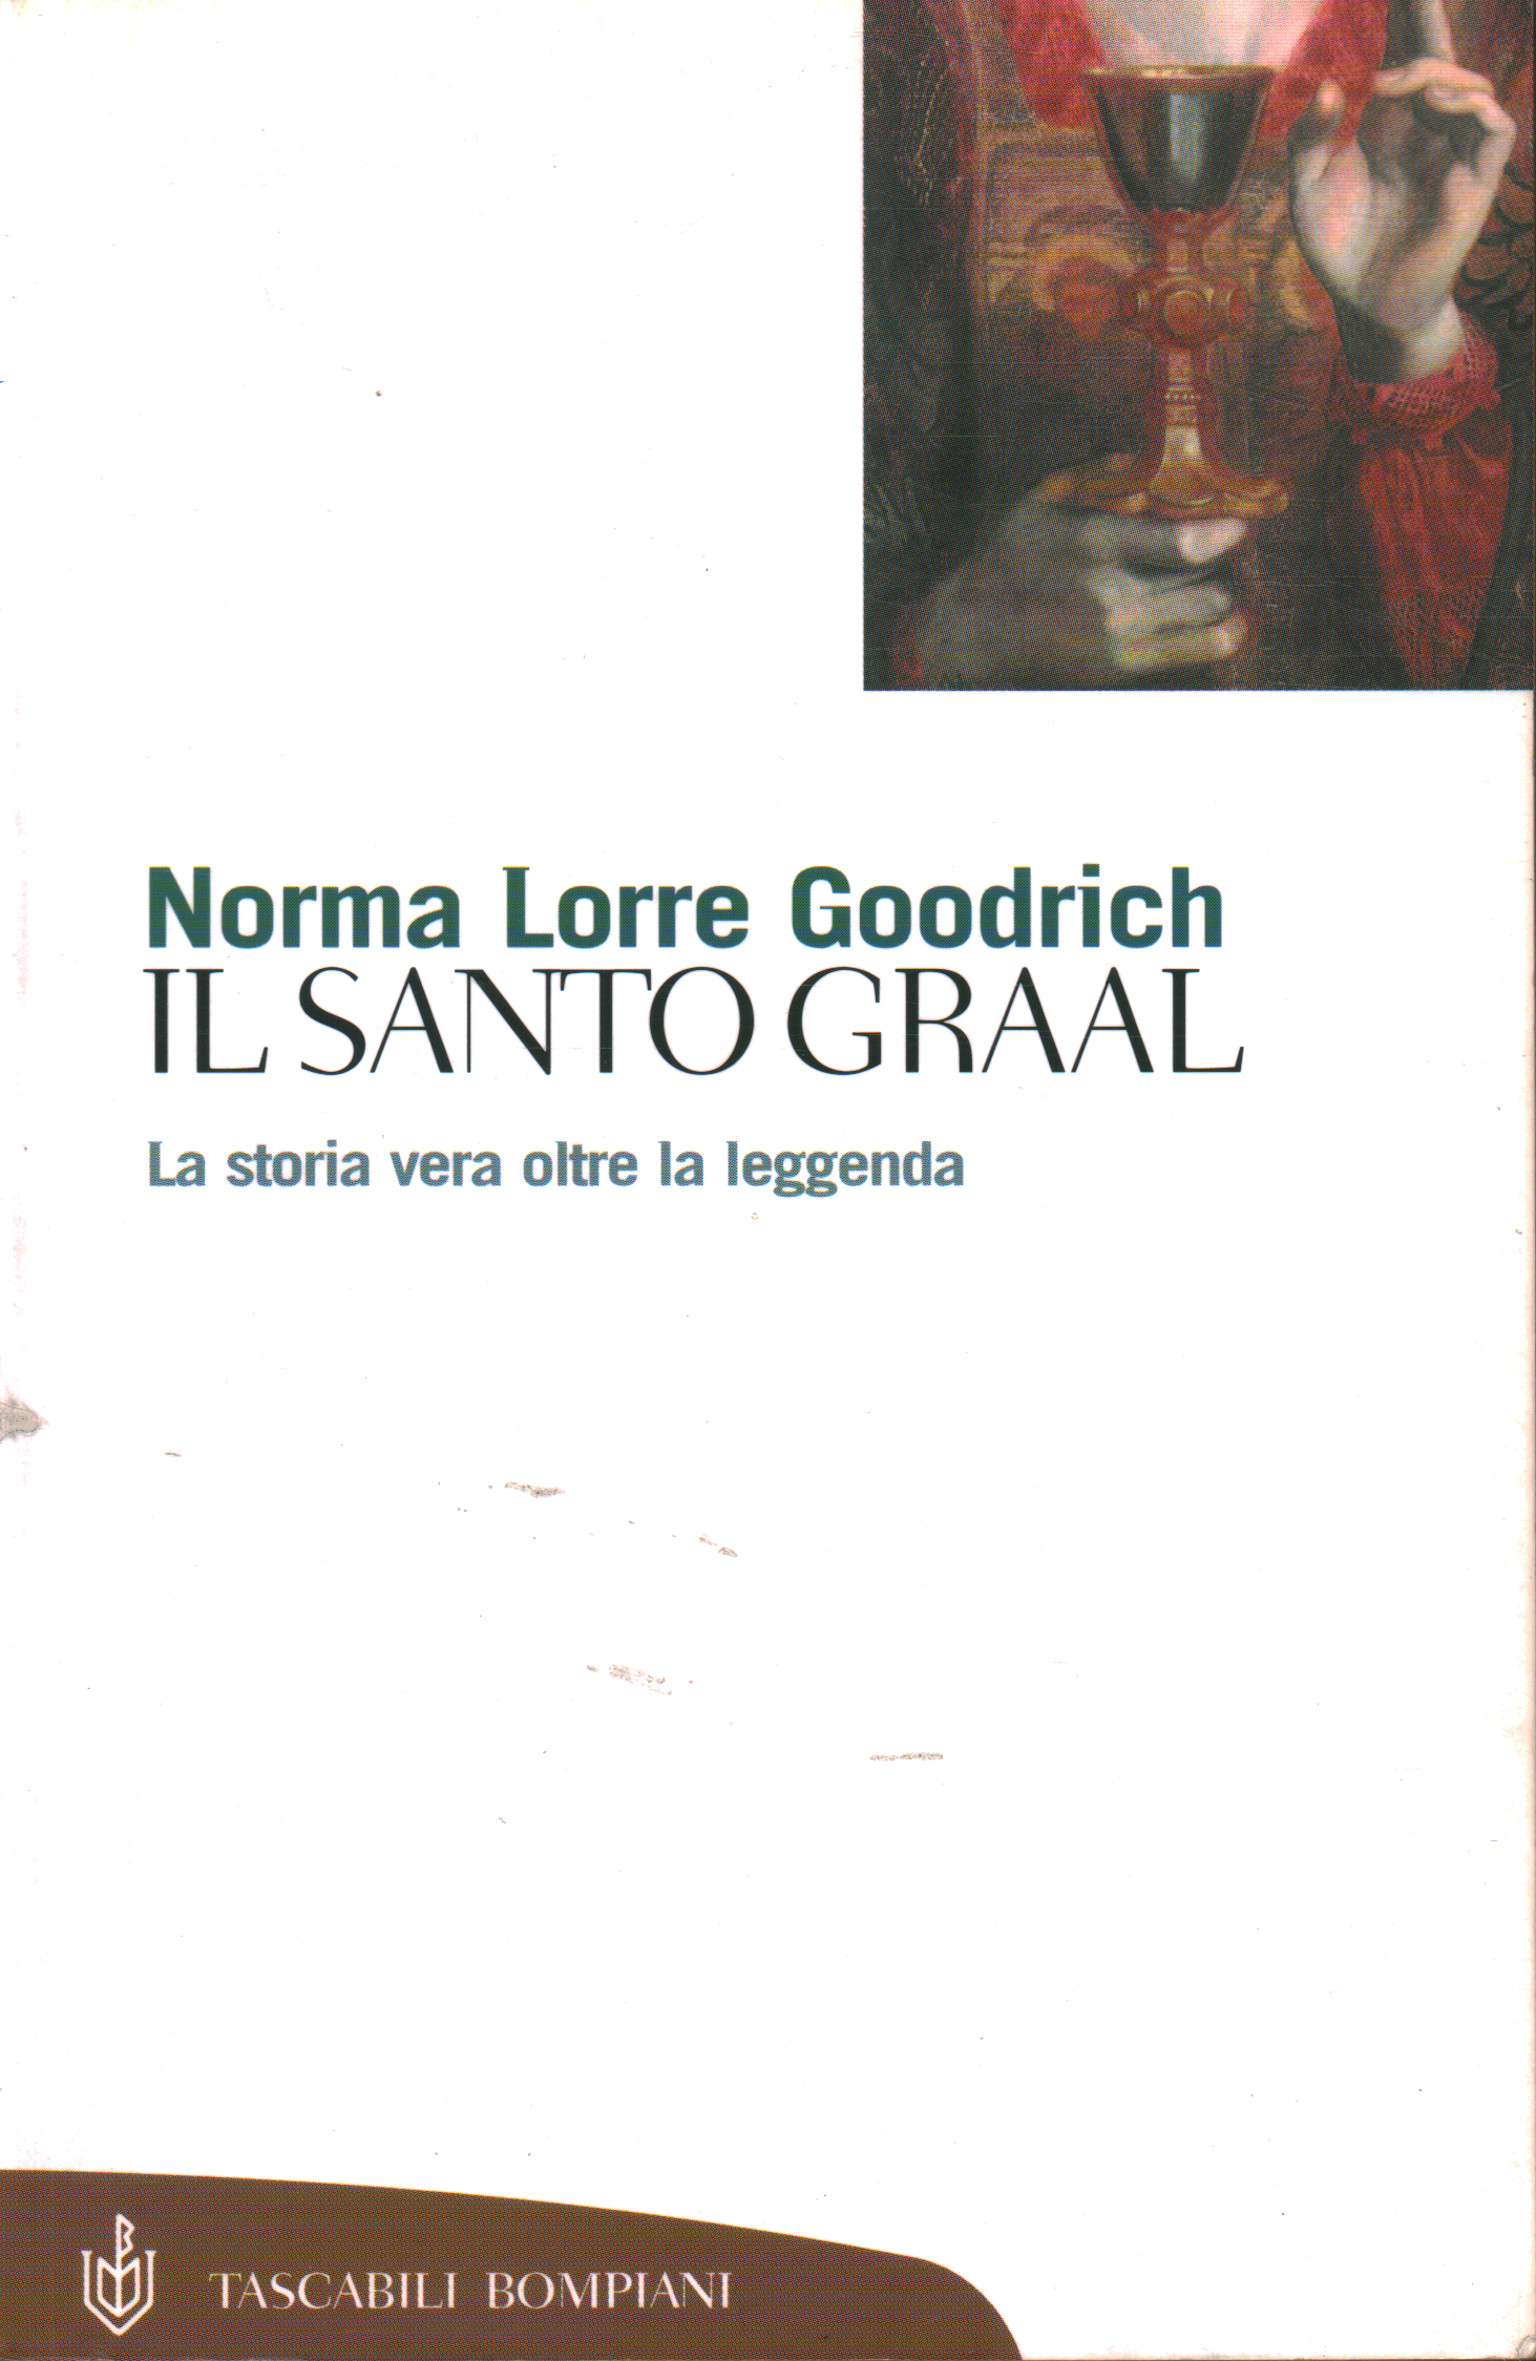 Der Heilige Gral, Norma L. Goodrich